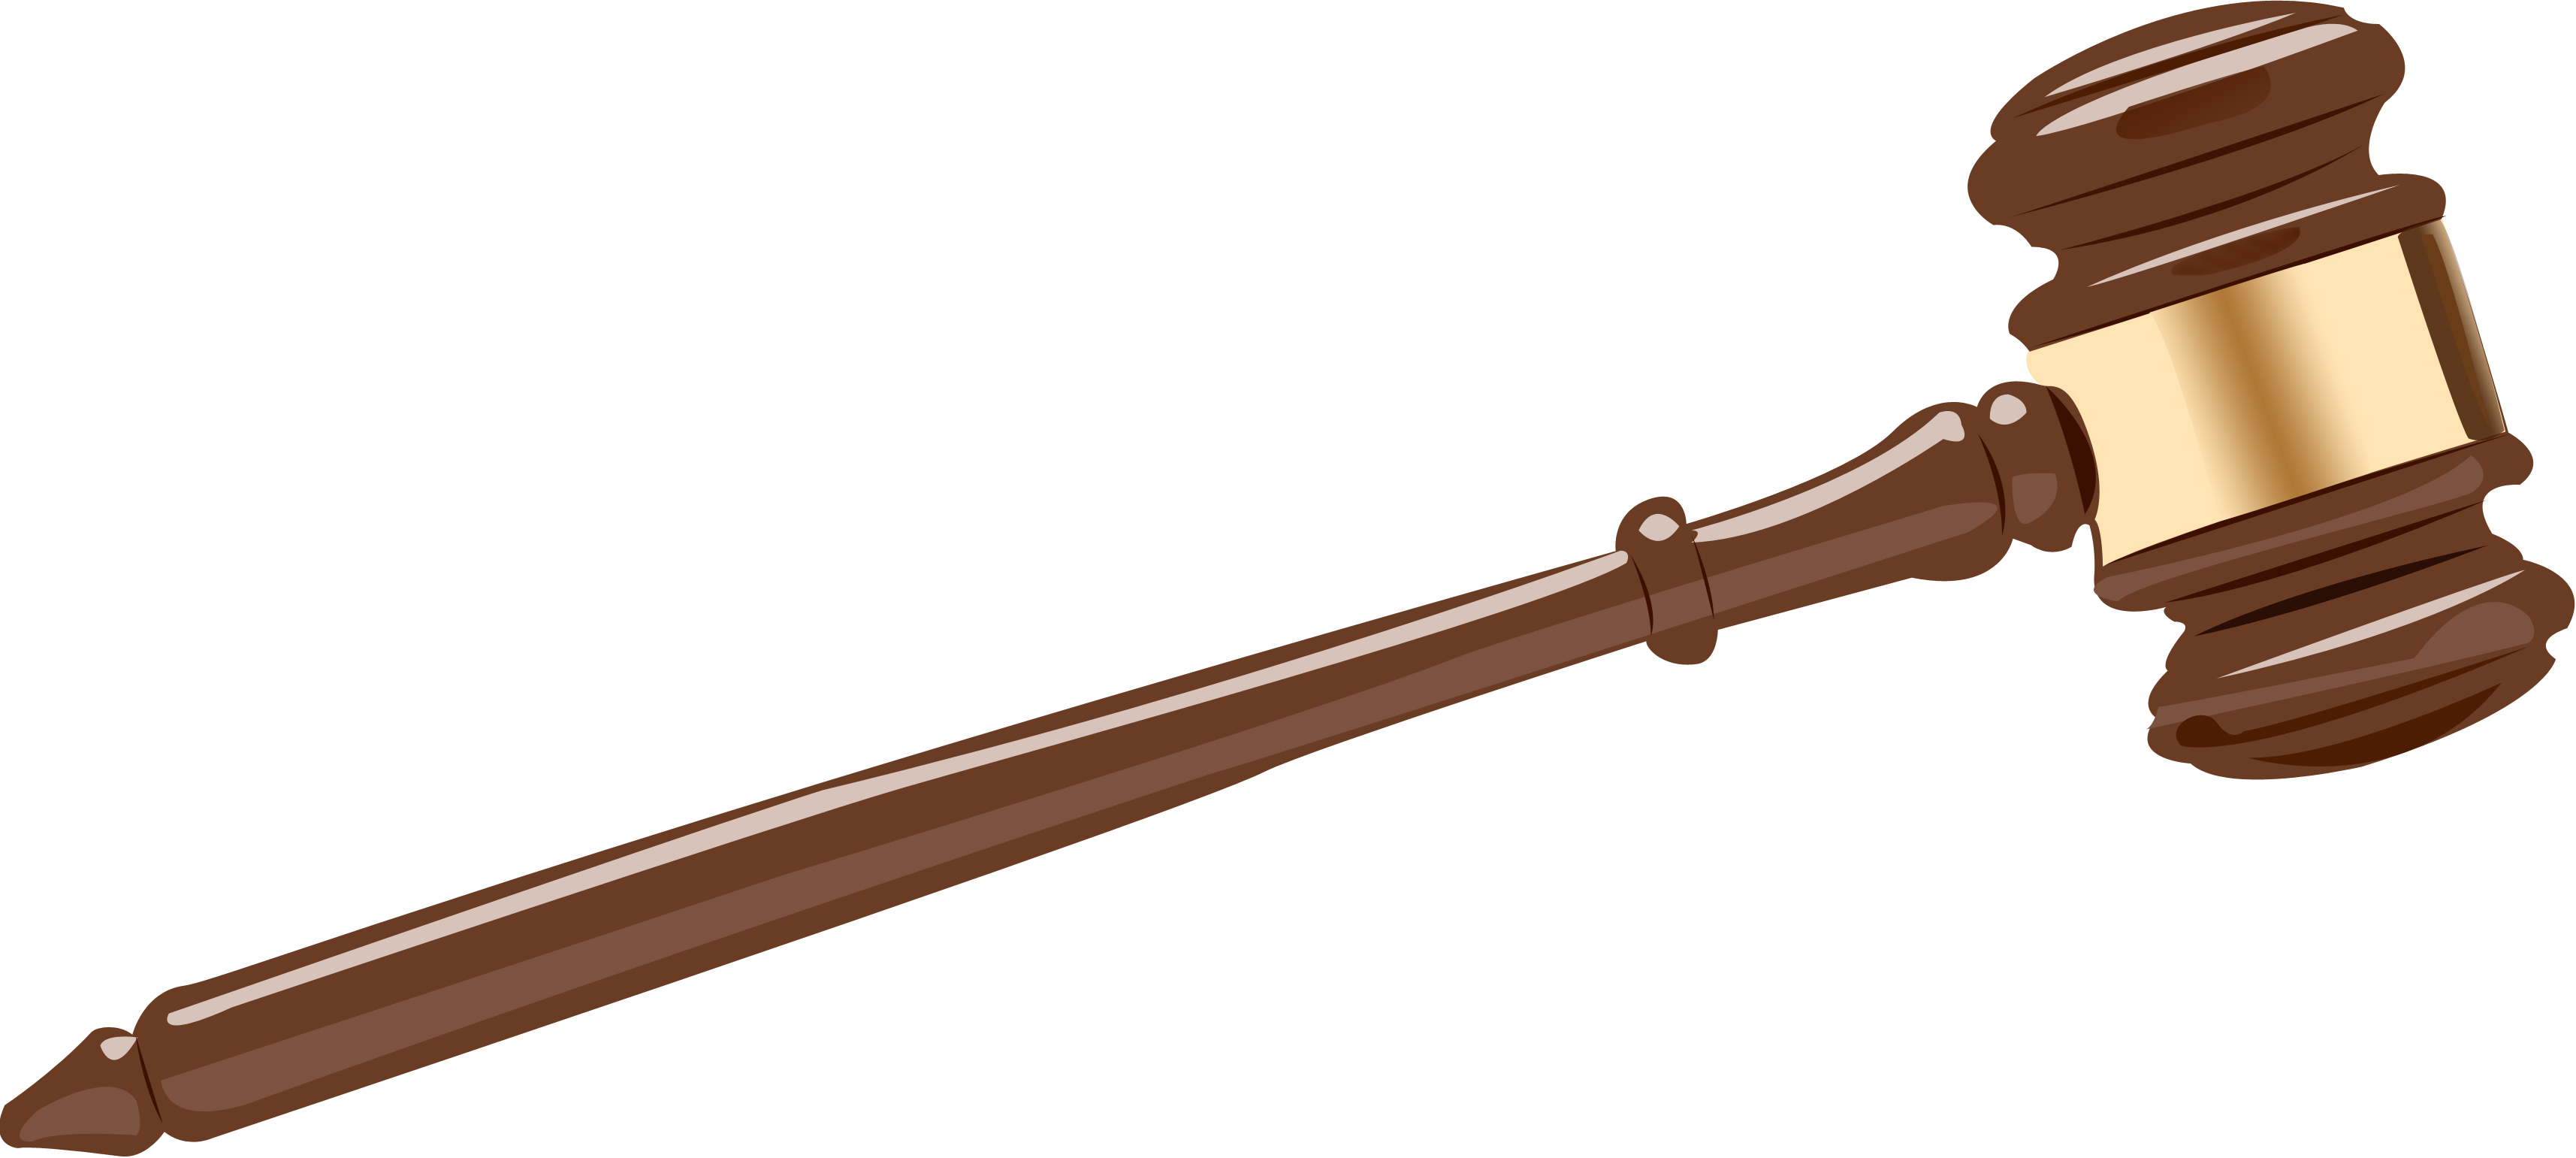 judge's gavel